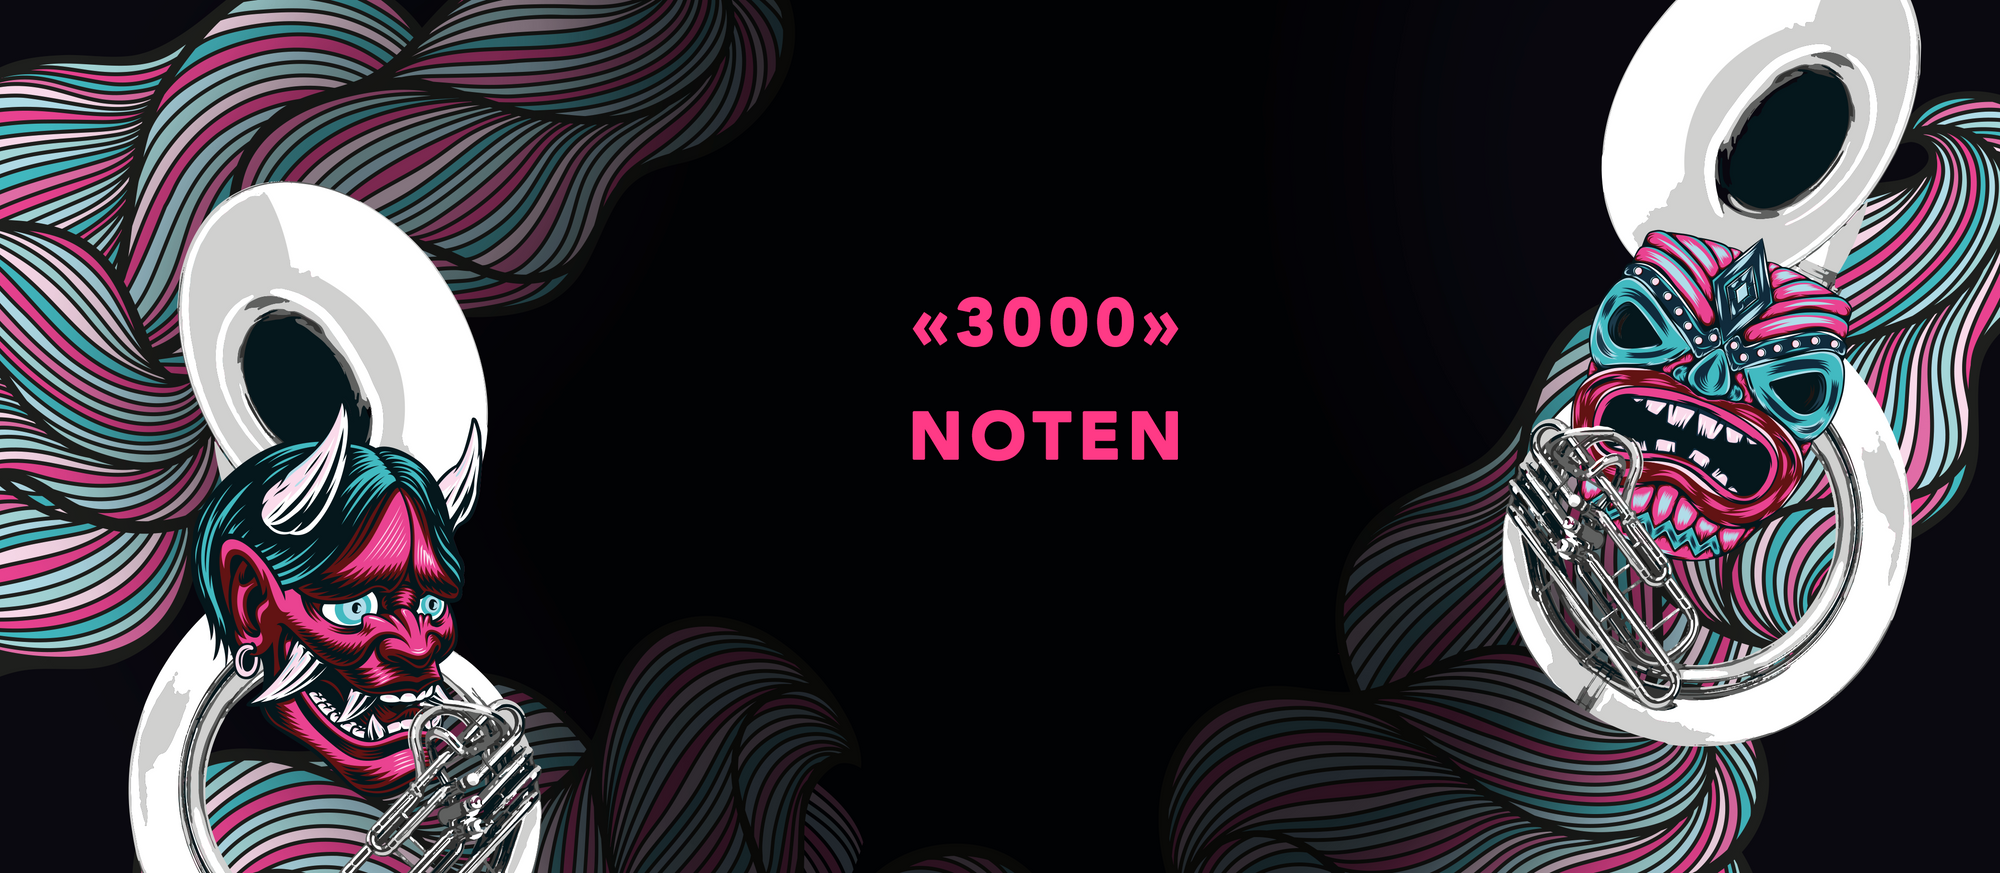 3000 (Noten)